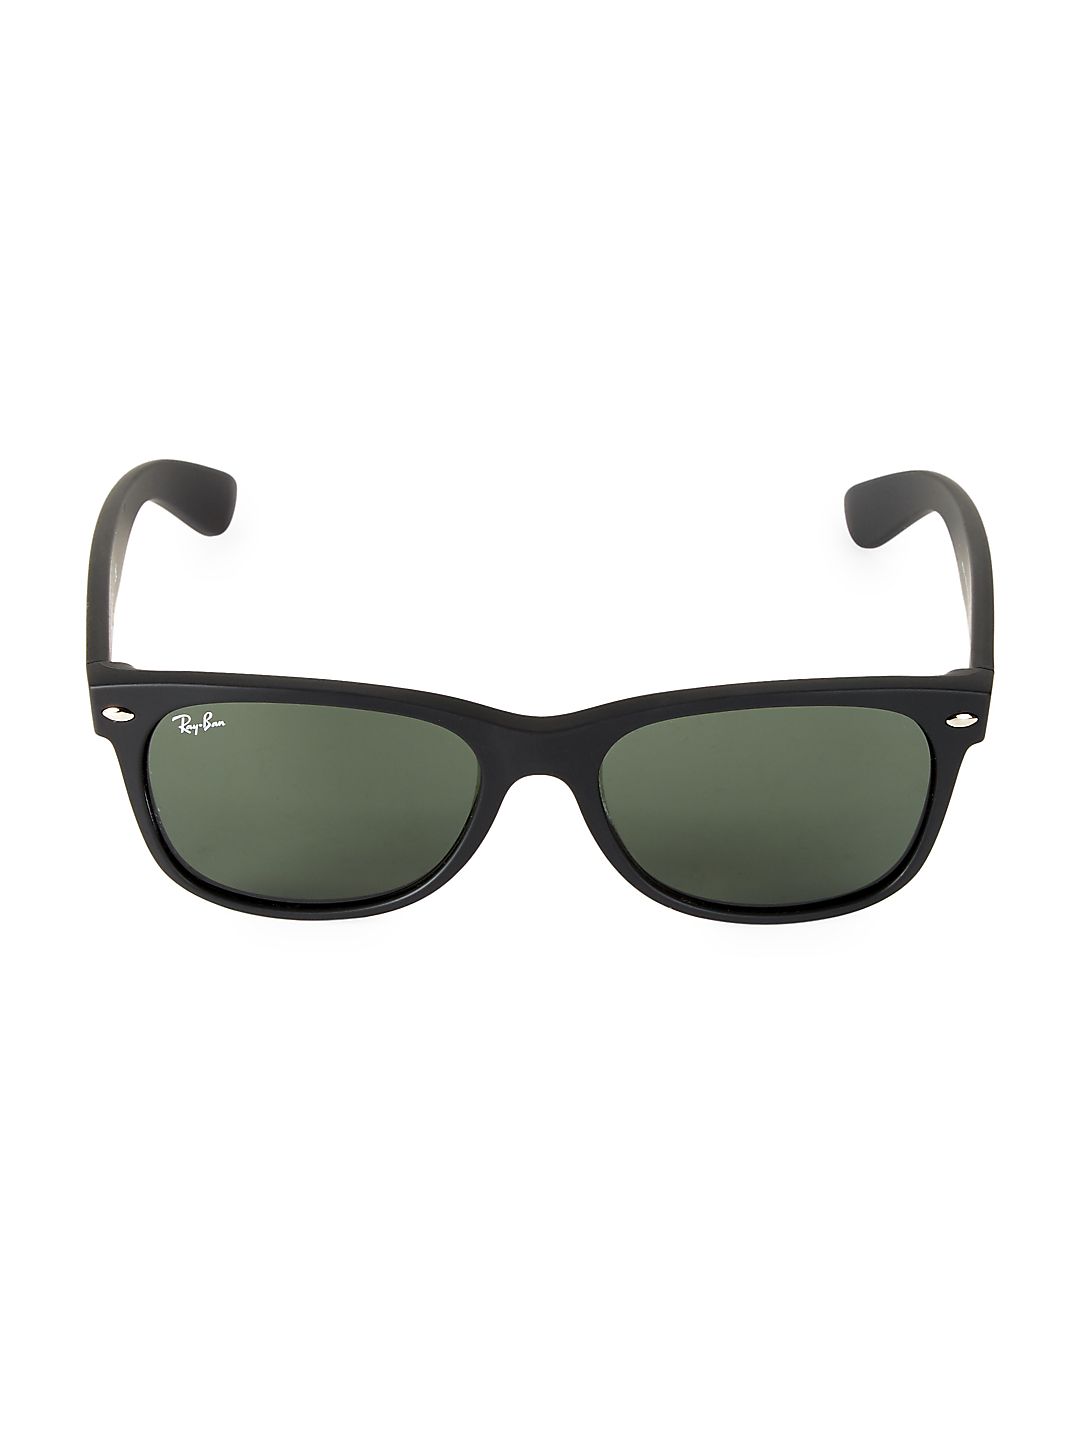 55MM RB2132 New Classic Wayfarer Sunglasses - image 1 of 3